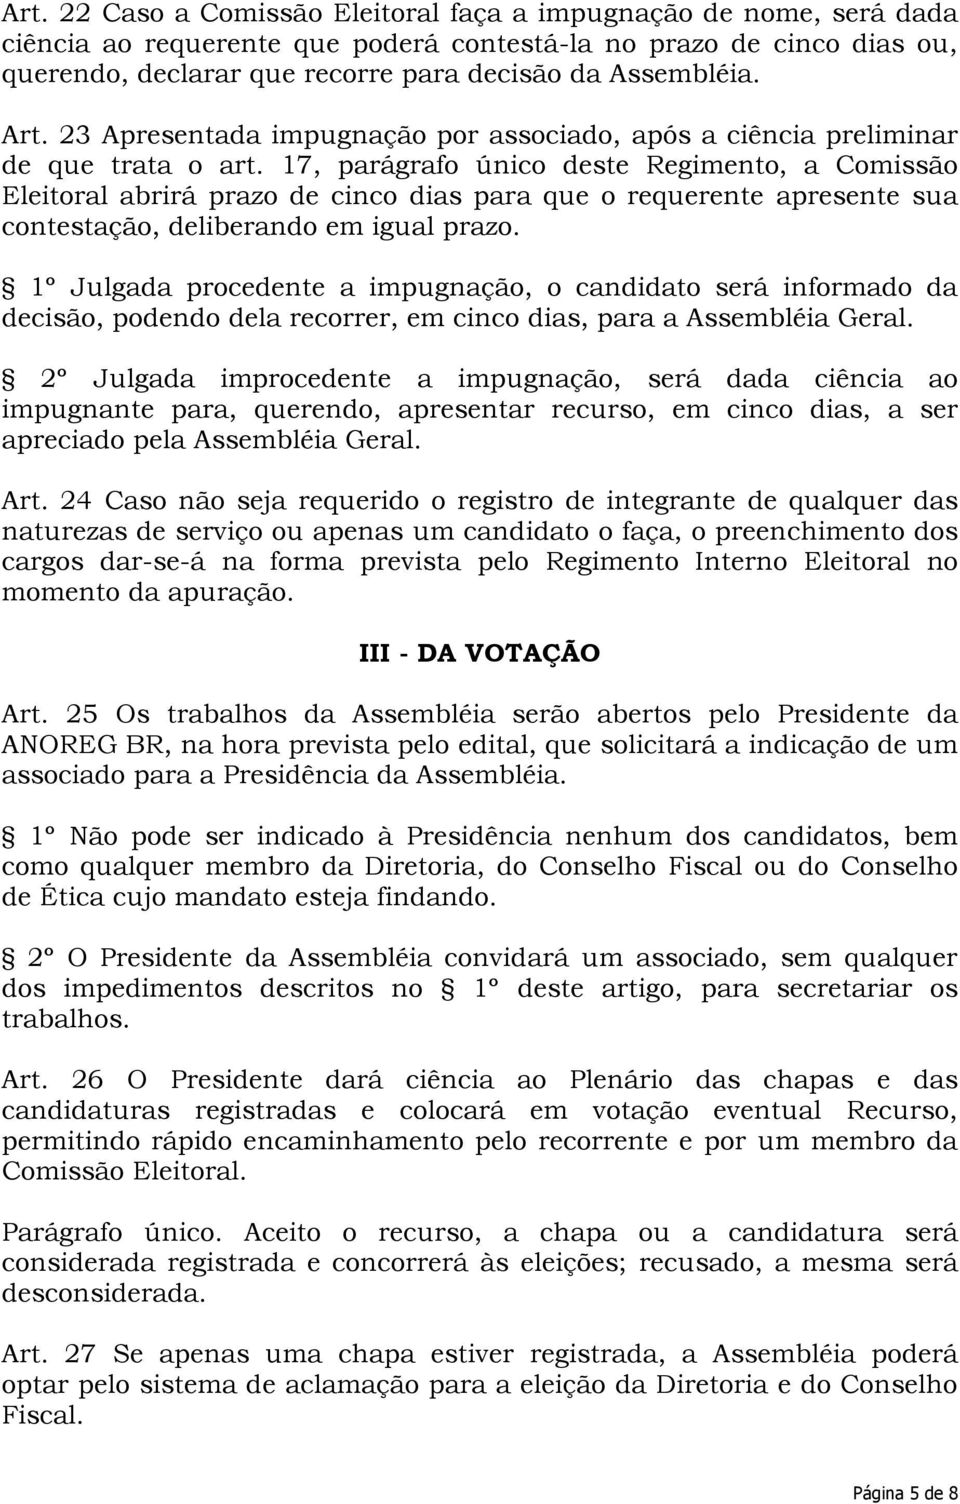 17, parágrafo único deste Regimento, a Comissão Eleitoral abrirá prazo de cinco dias para que o requerente apresente sua contestação, deliberando em igual prazo.